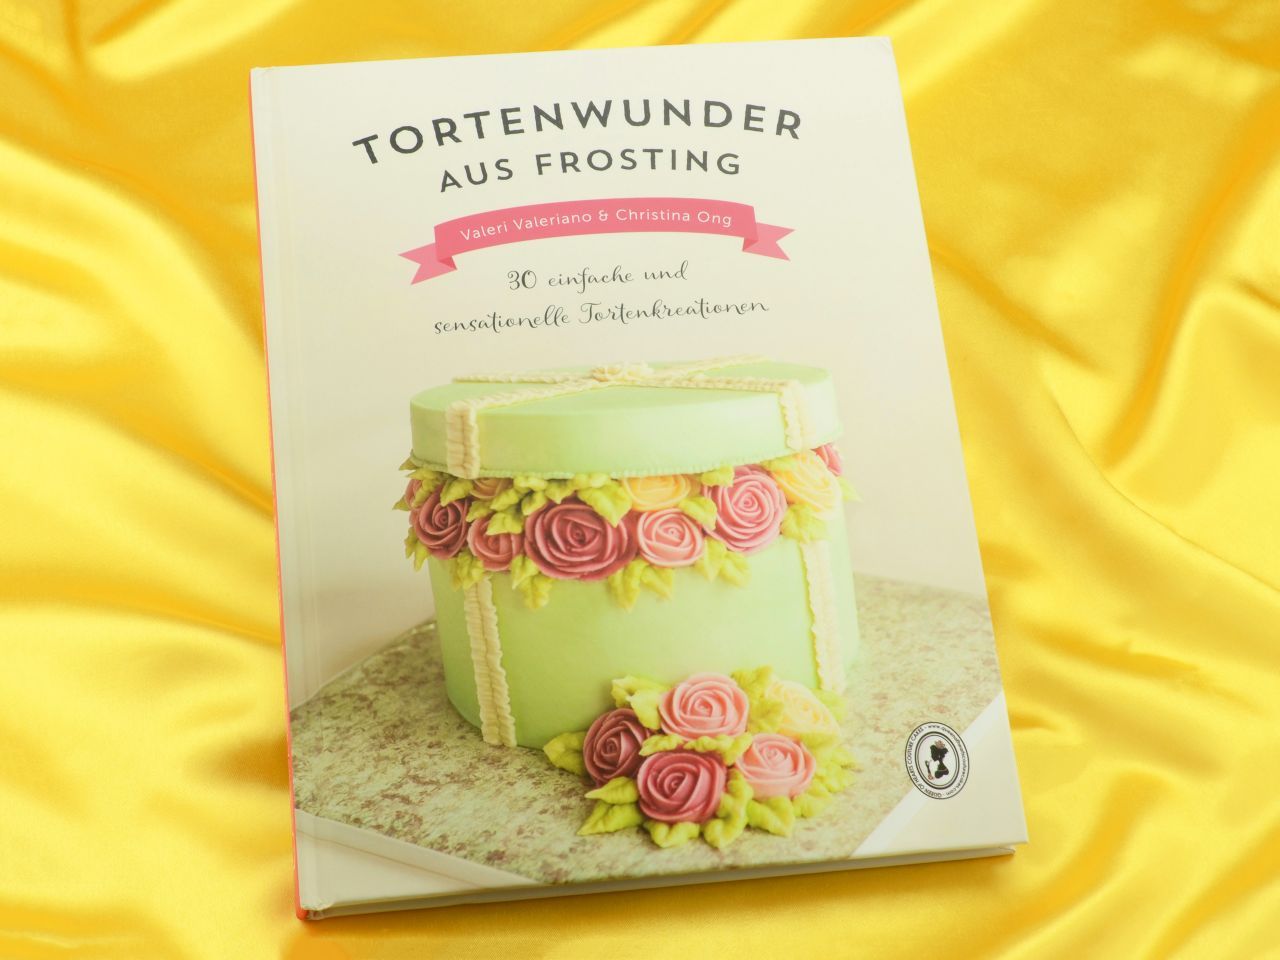 Tortenwunder aus Frosting von Cake & Bake Verlag